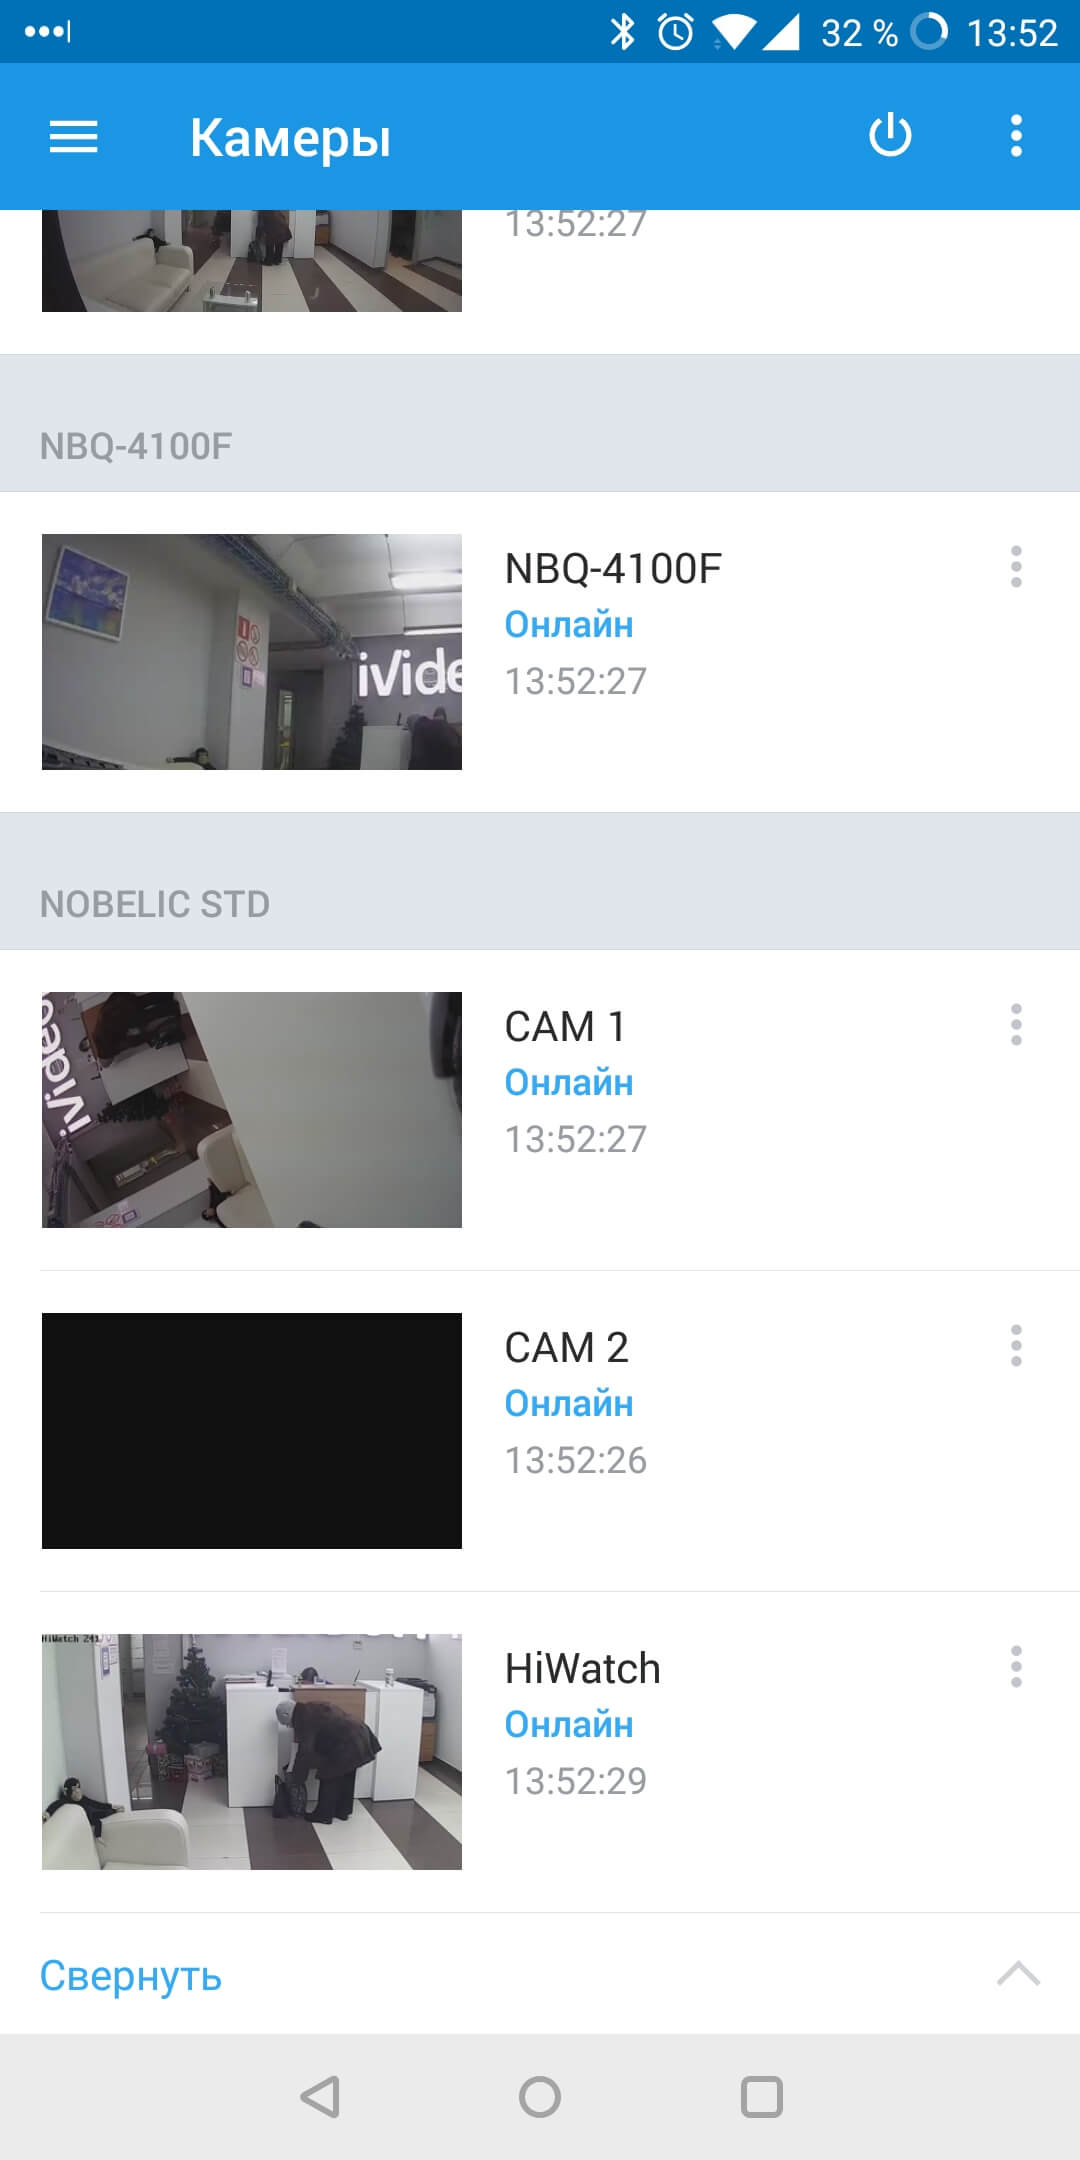 Как устроена система видеонаблюдения Ivideon: обзор мобильного приложения - 6